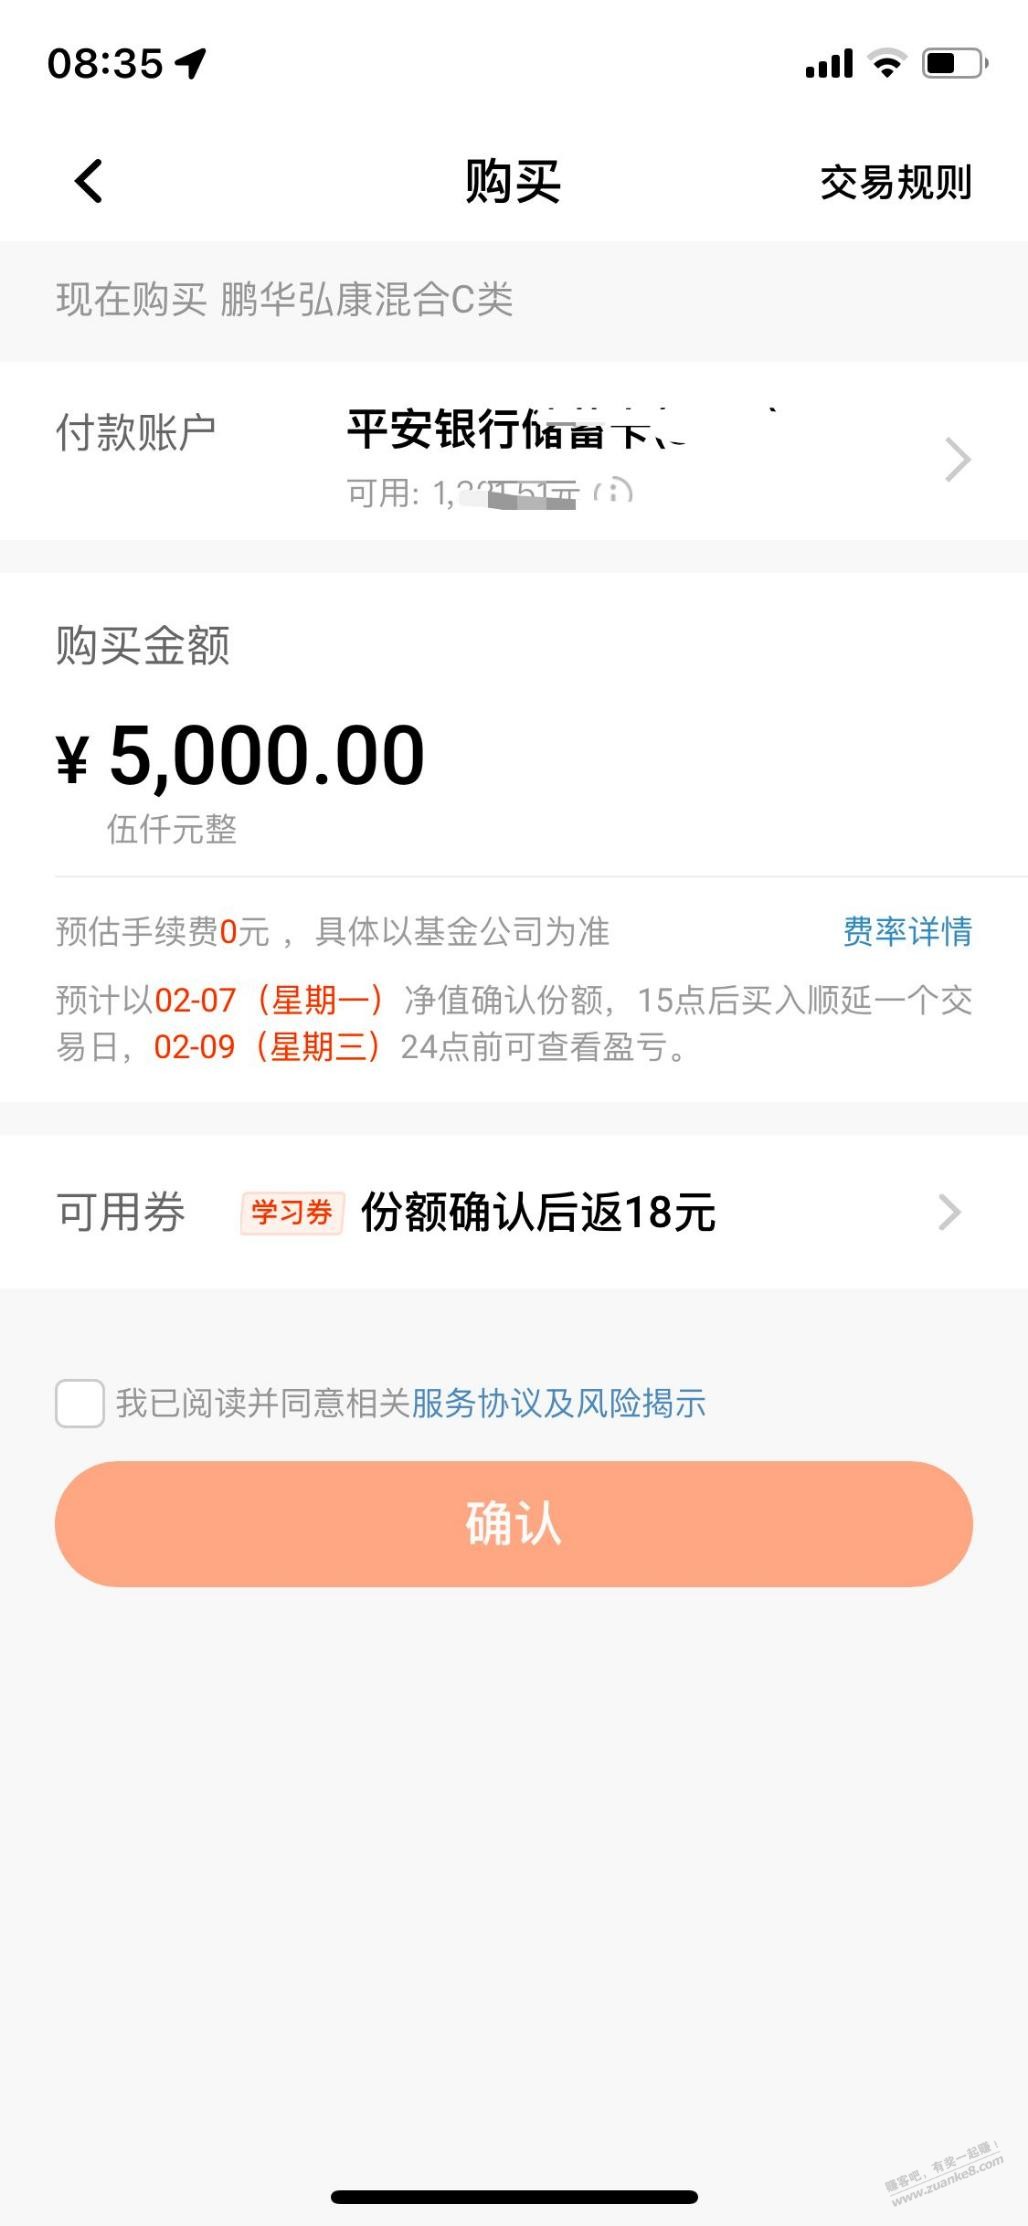 口袋银行基金红包 可以3412-惠小助(52huixz.com)